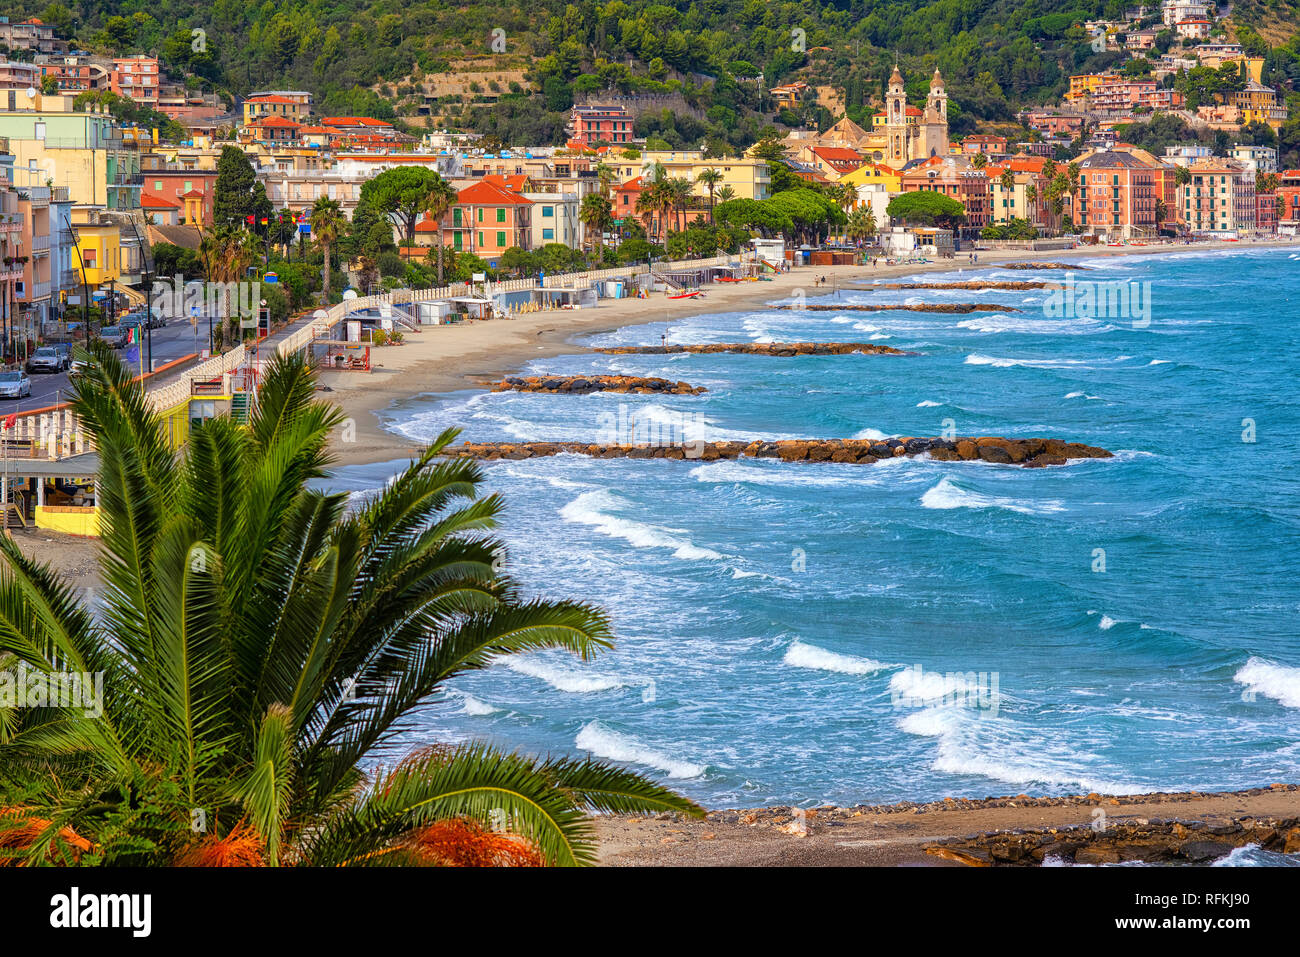 Spiaggia di sabbia nel centro storico di Laigueglia cittadina sulla Riviera Italiana, Alassio Liguria, Italia Foto Stock